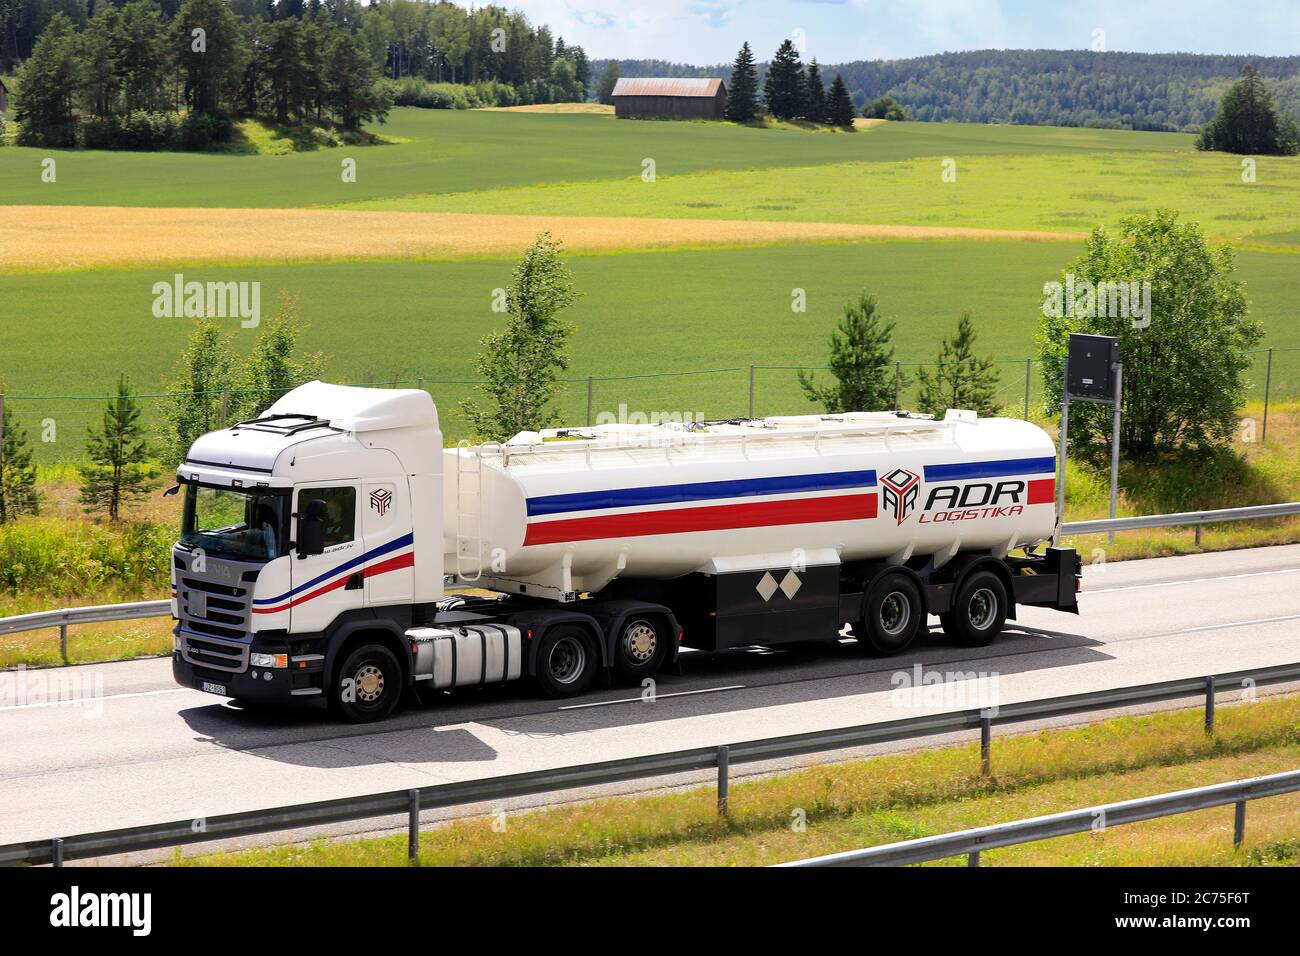 White Scania R450 camion semi-serbatoio ADR Logistica alla velocità sulla strada nazionale finlandese 1. Salo, Finlandia. 10 luglio 2020. Foto Stock